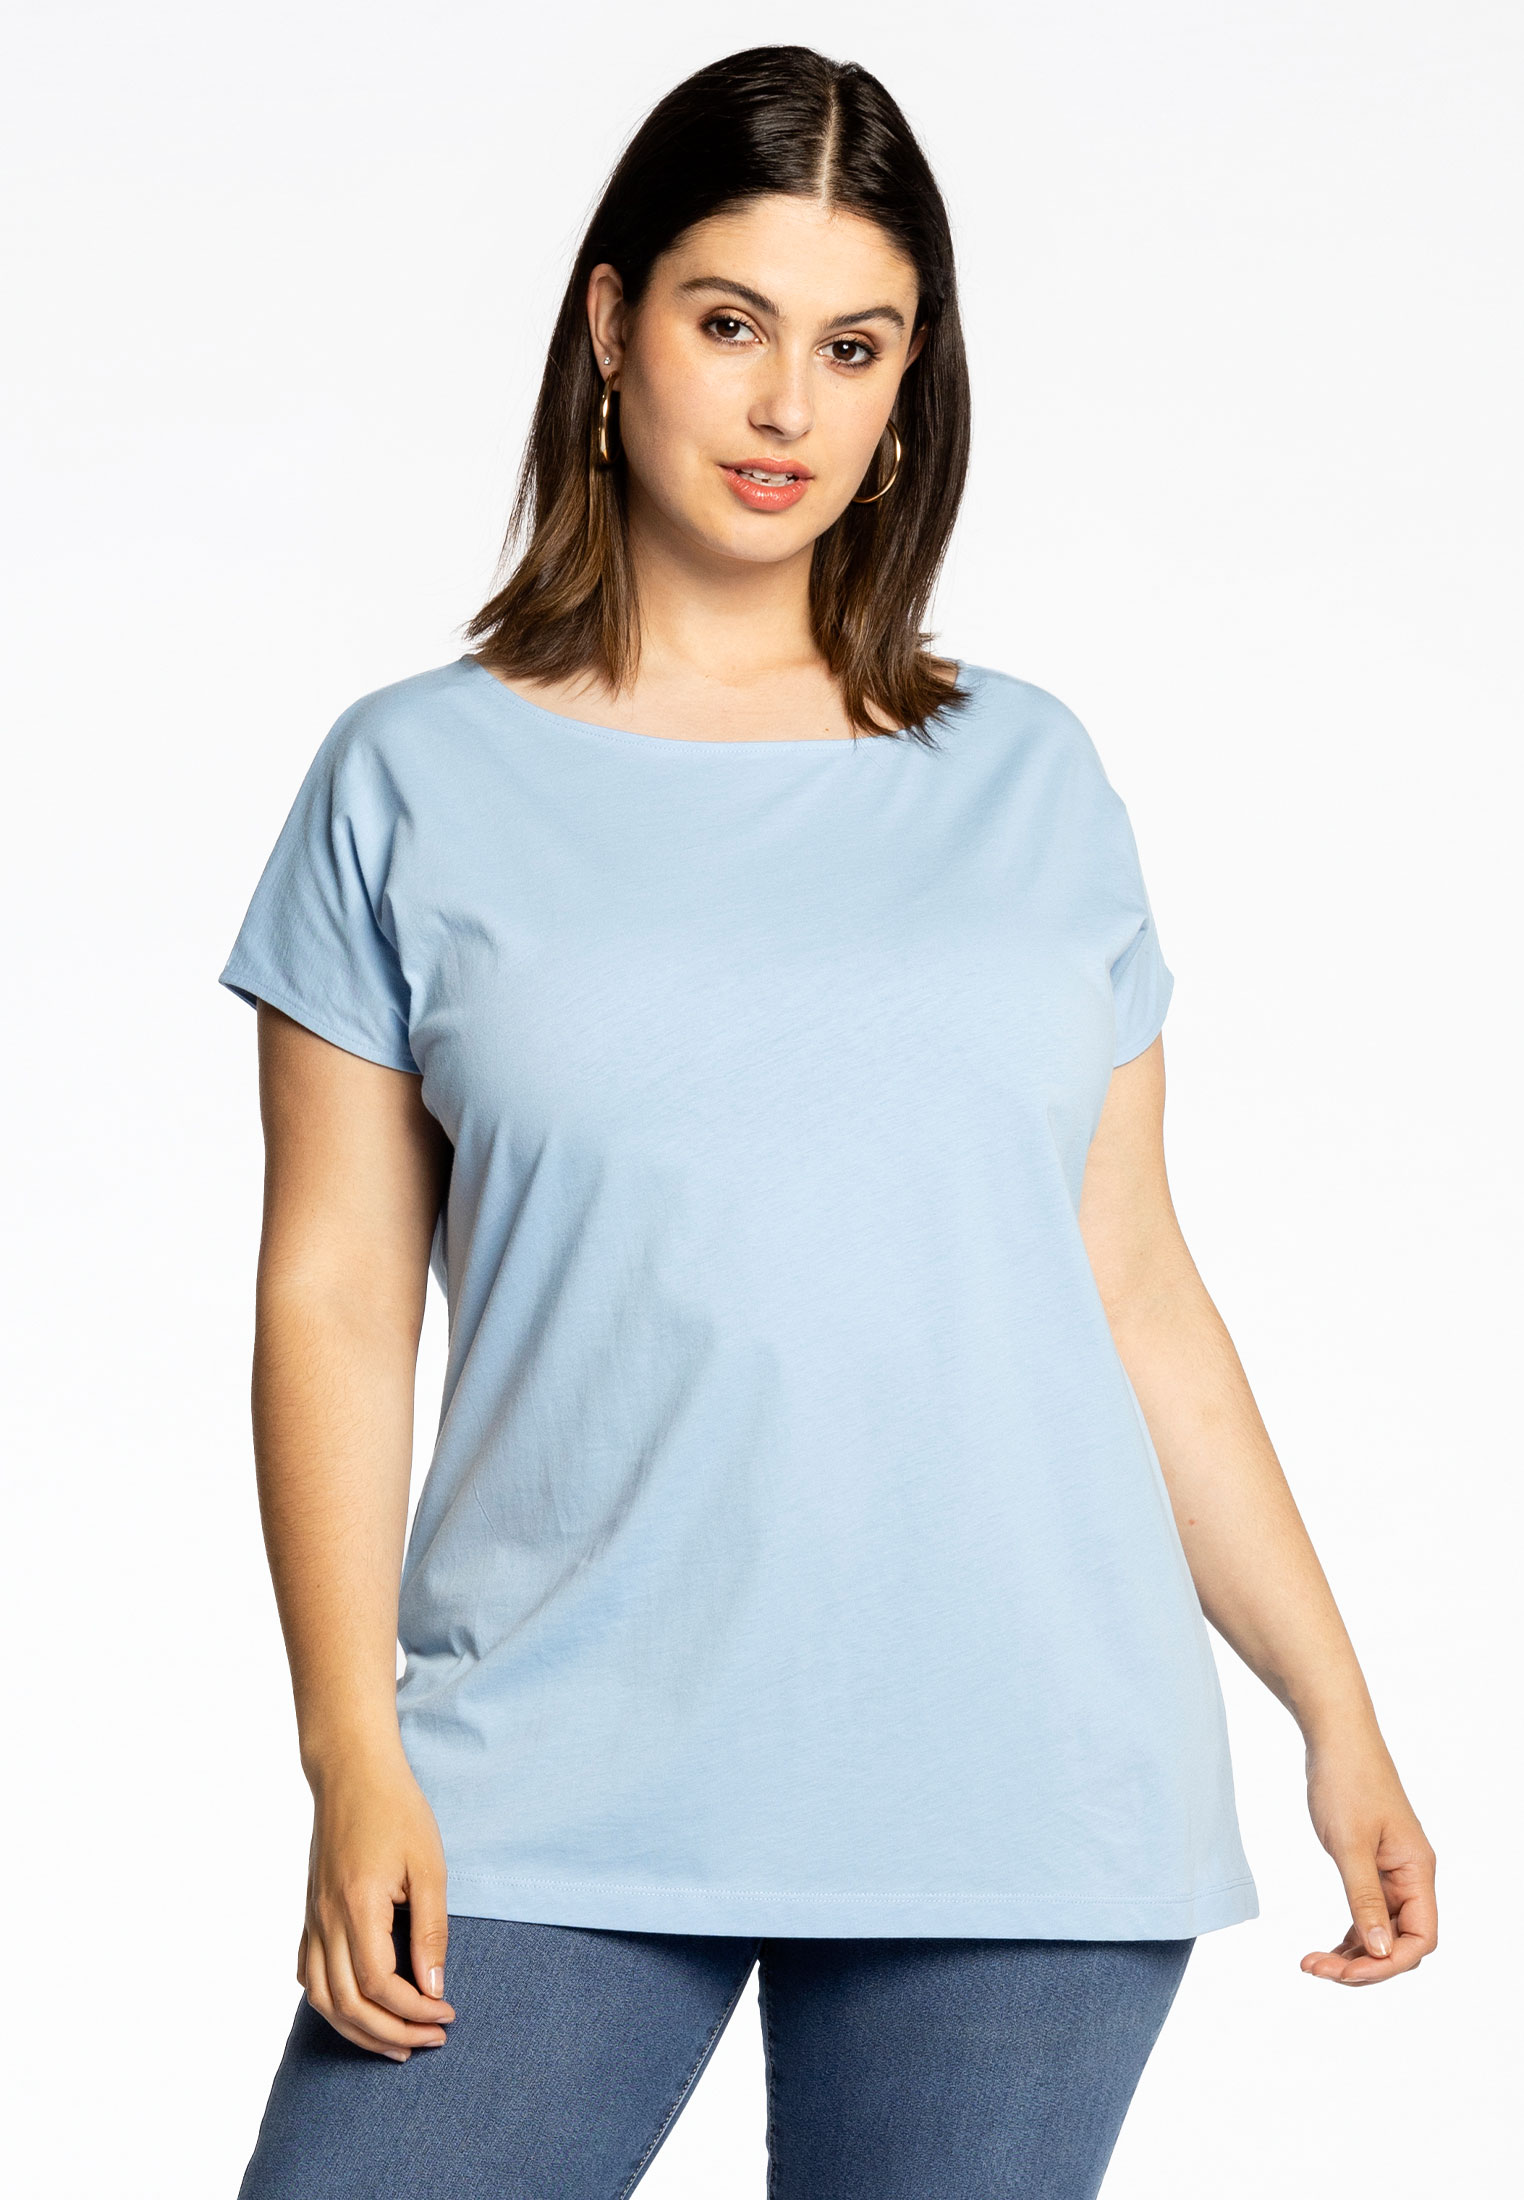 Basic T-shirt kapmouwen COTTON 54/56 light blue